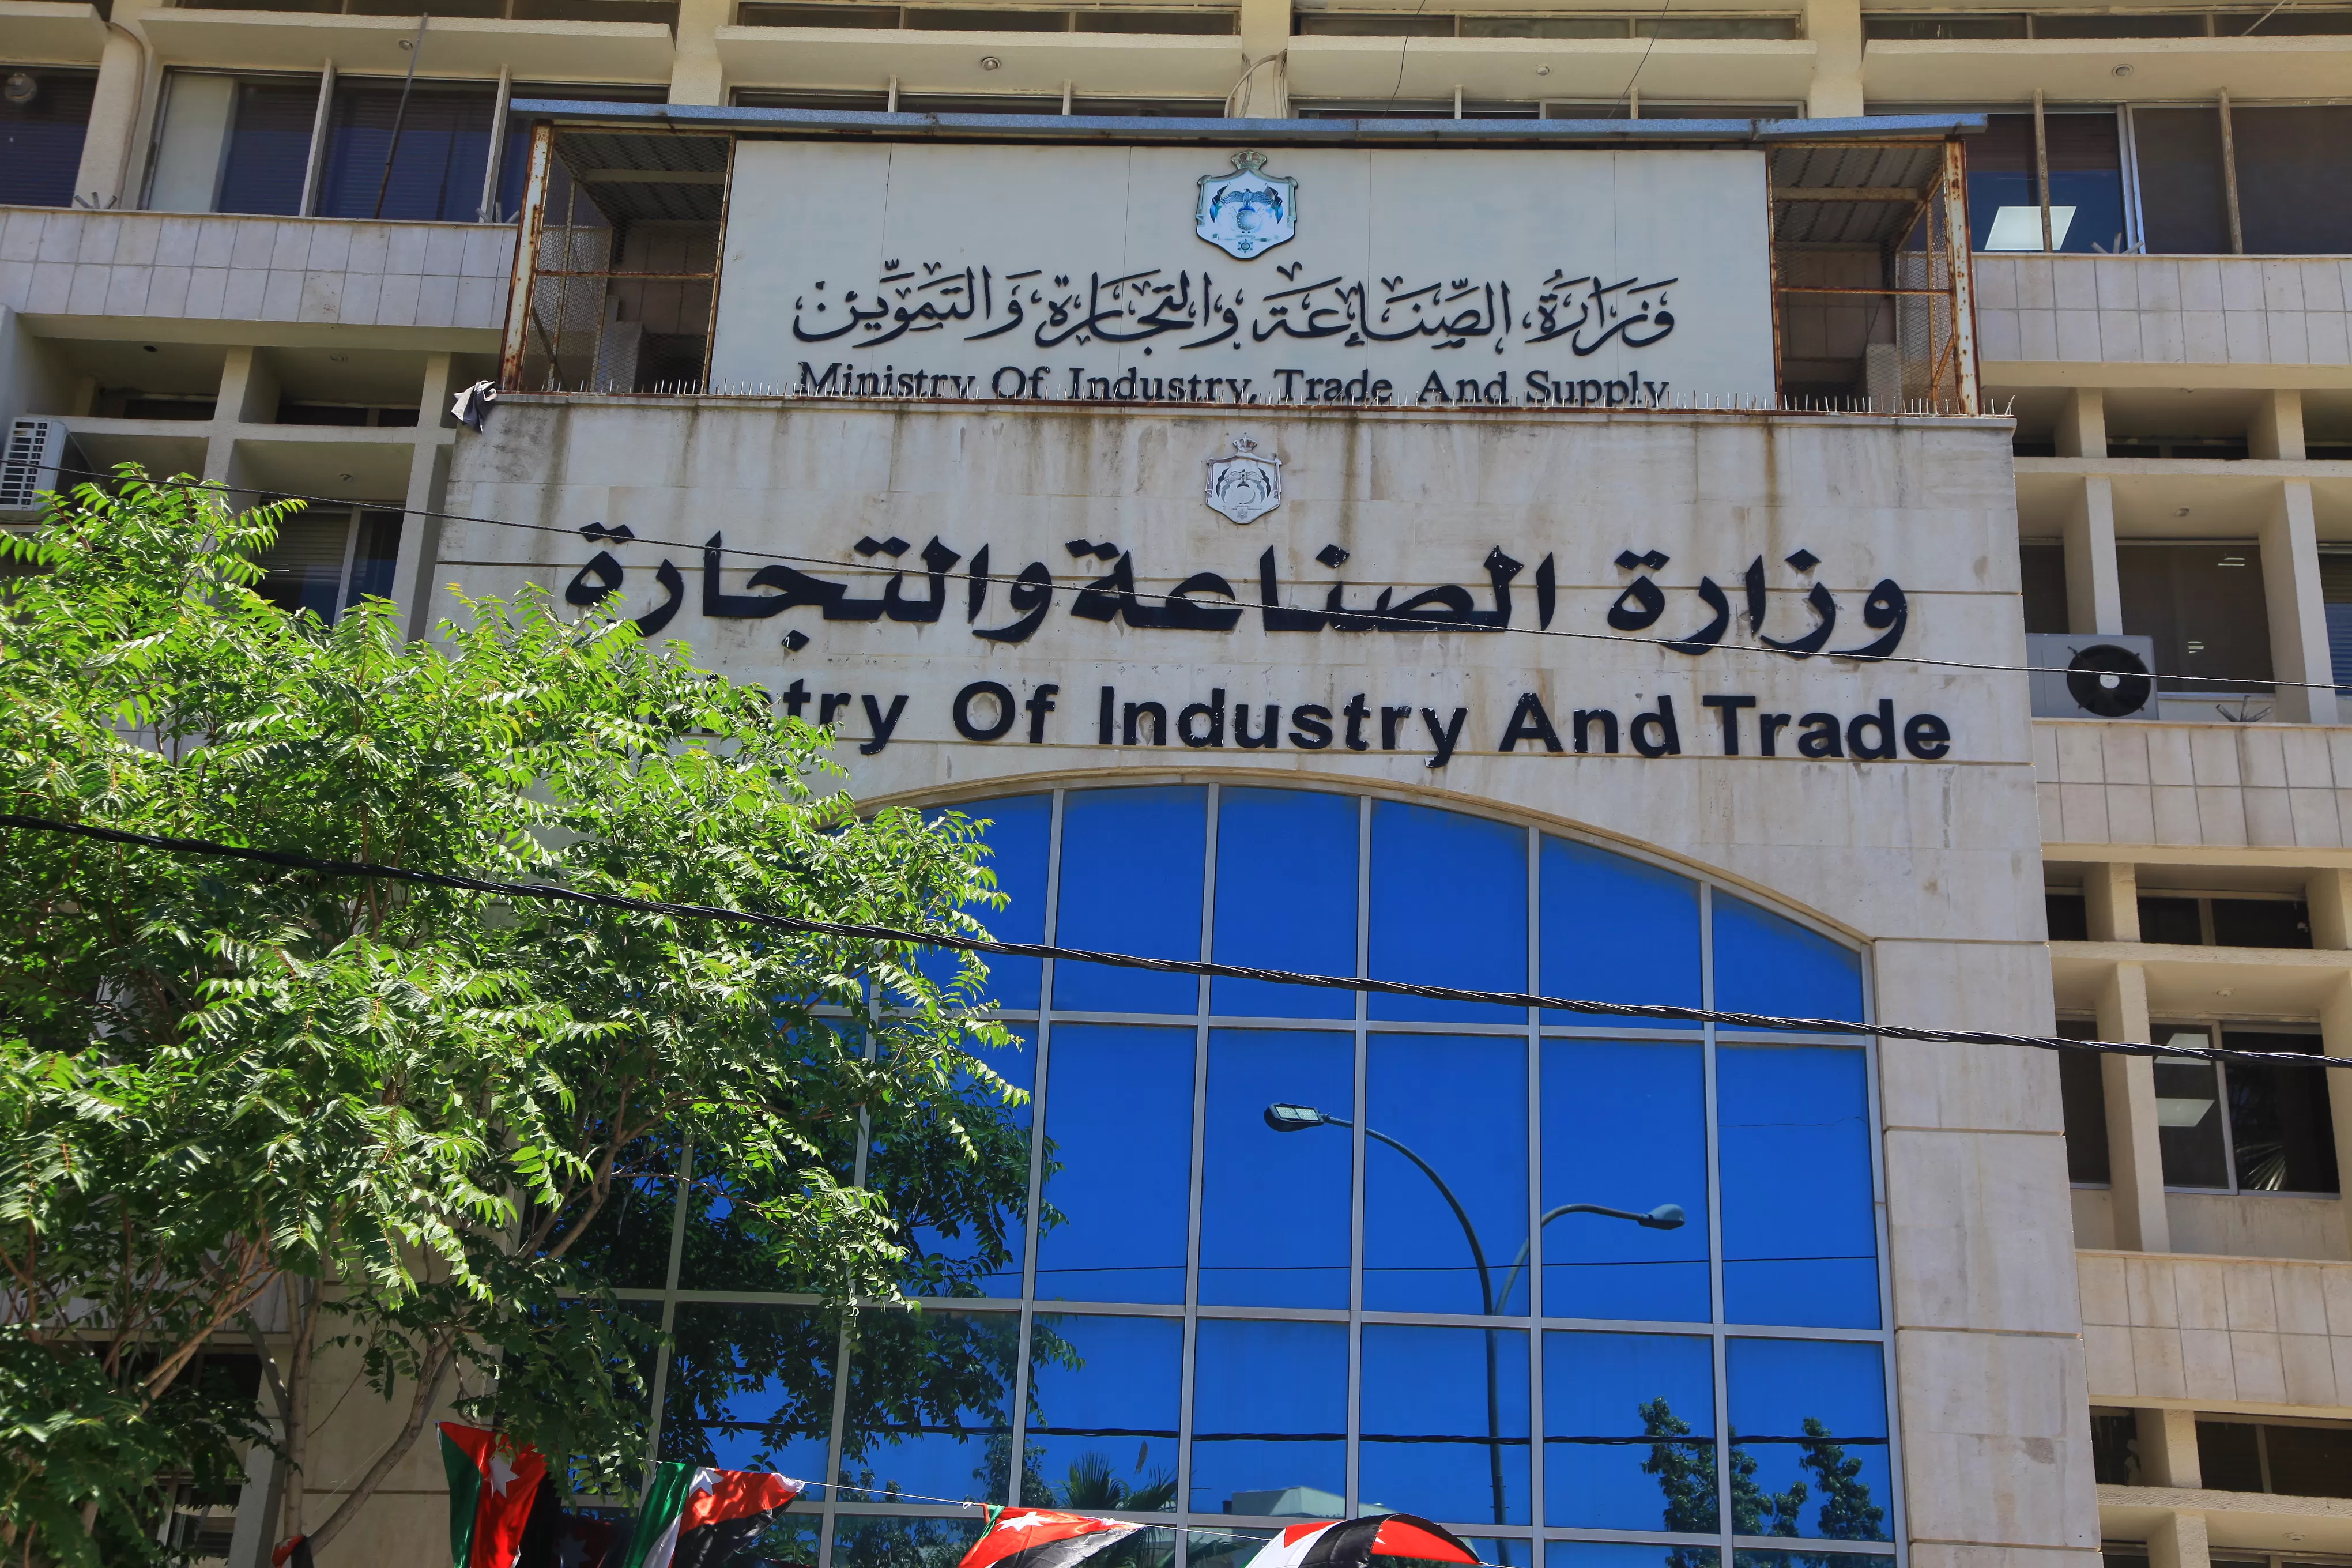 مدار الساعة,وزارة الصناعة والتجارة والتموين,المؤسسة الأردنية لتطوير المشاريع الاقتصادية,الاردن,الأردن,اقتصاد,